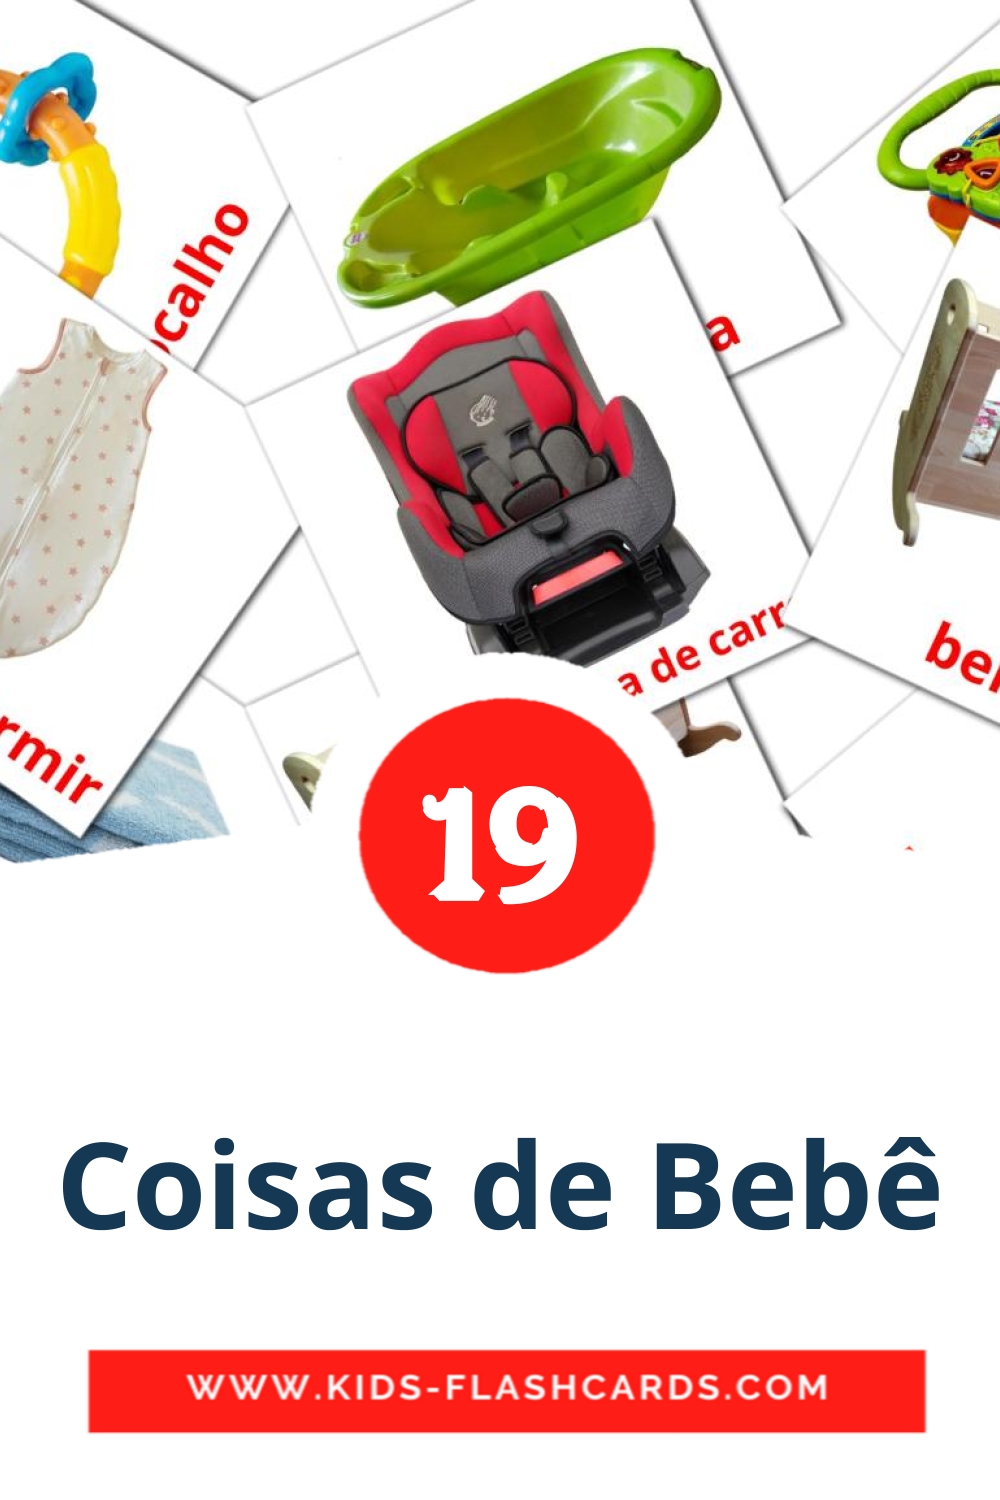 19 carte illustrate di Coisas de Bebê per la scuola materna in portoghese